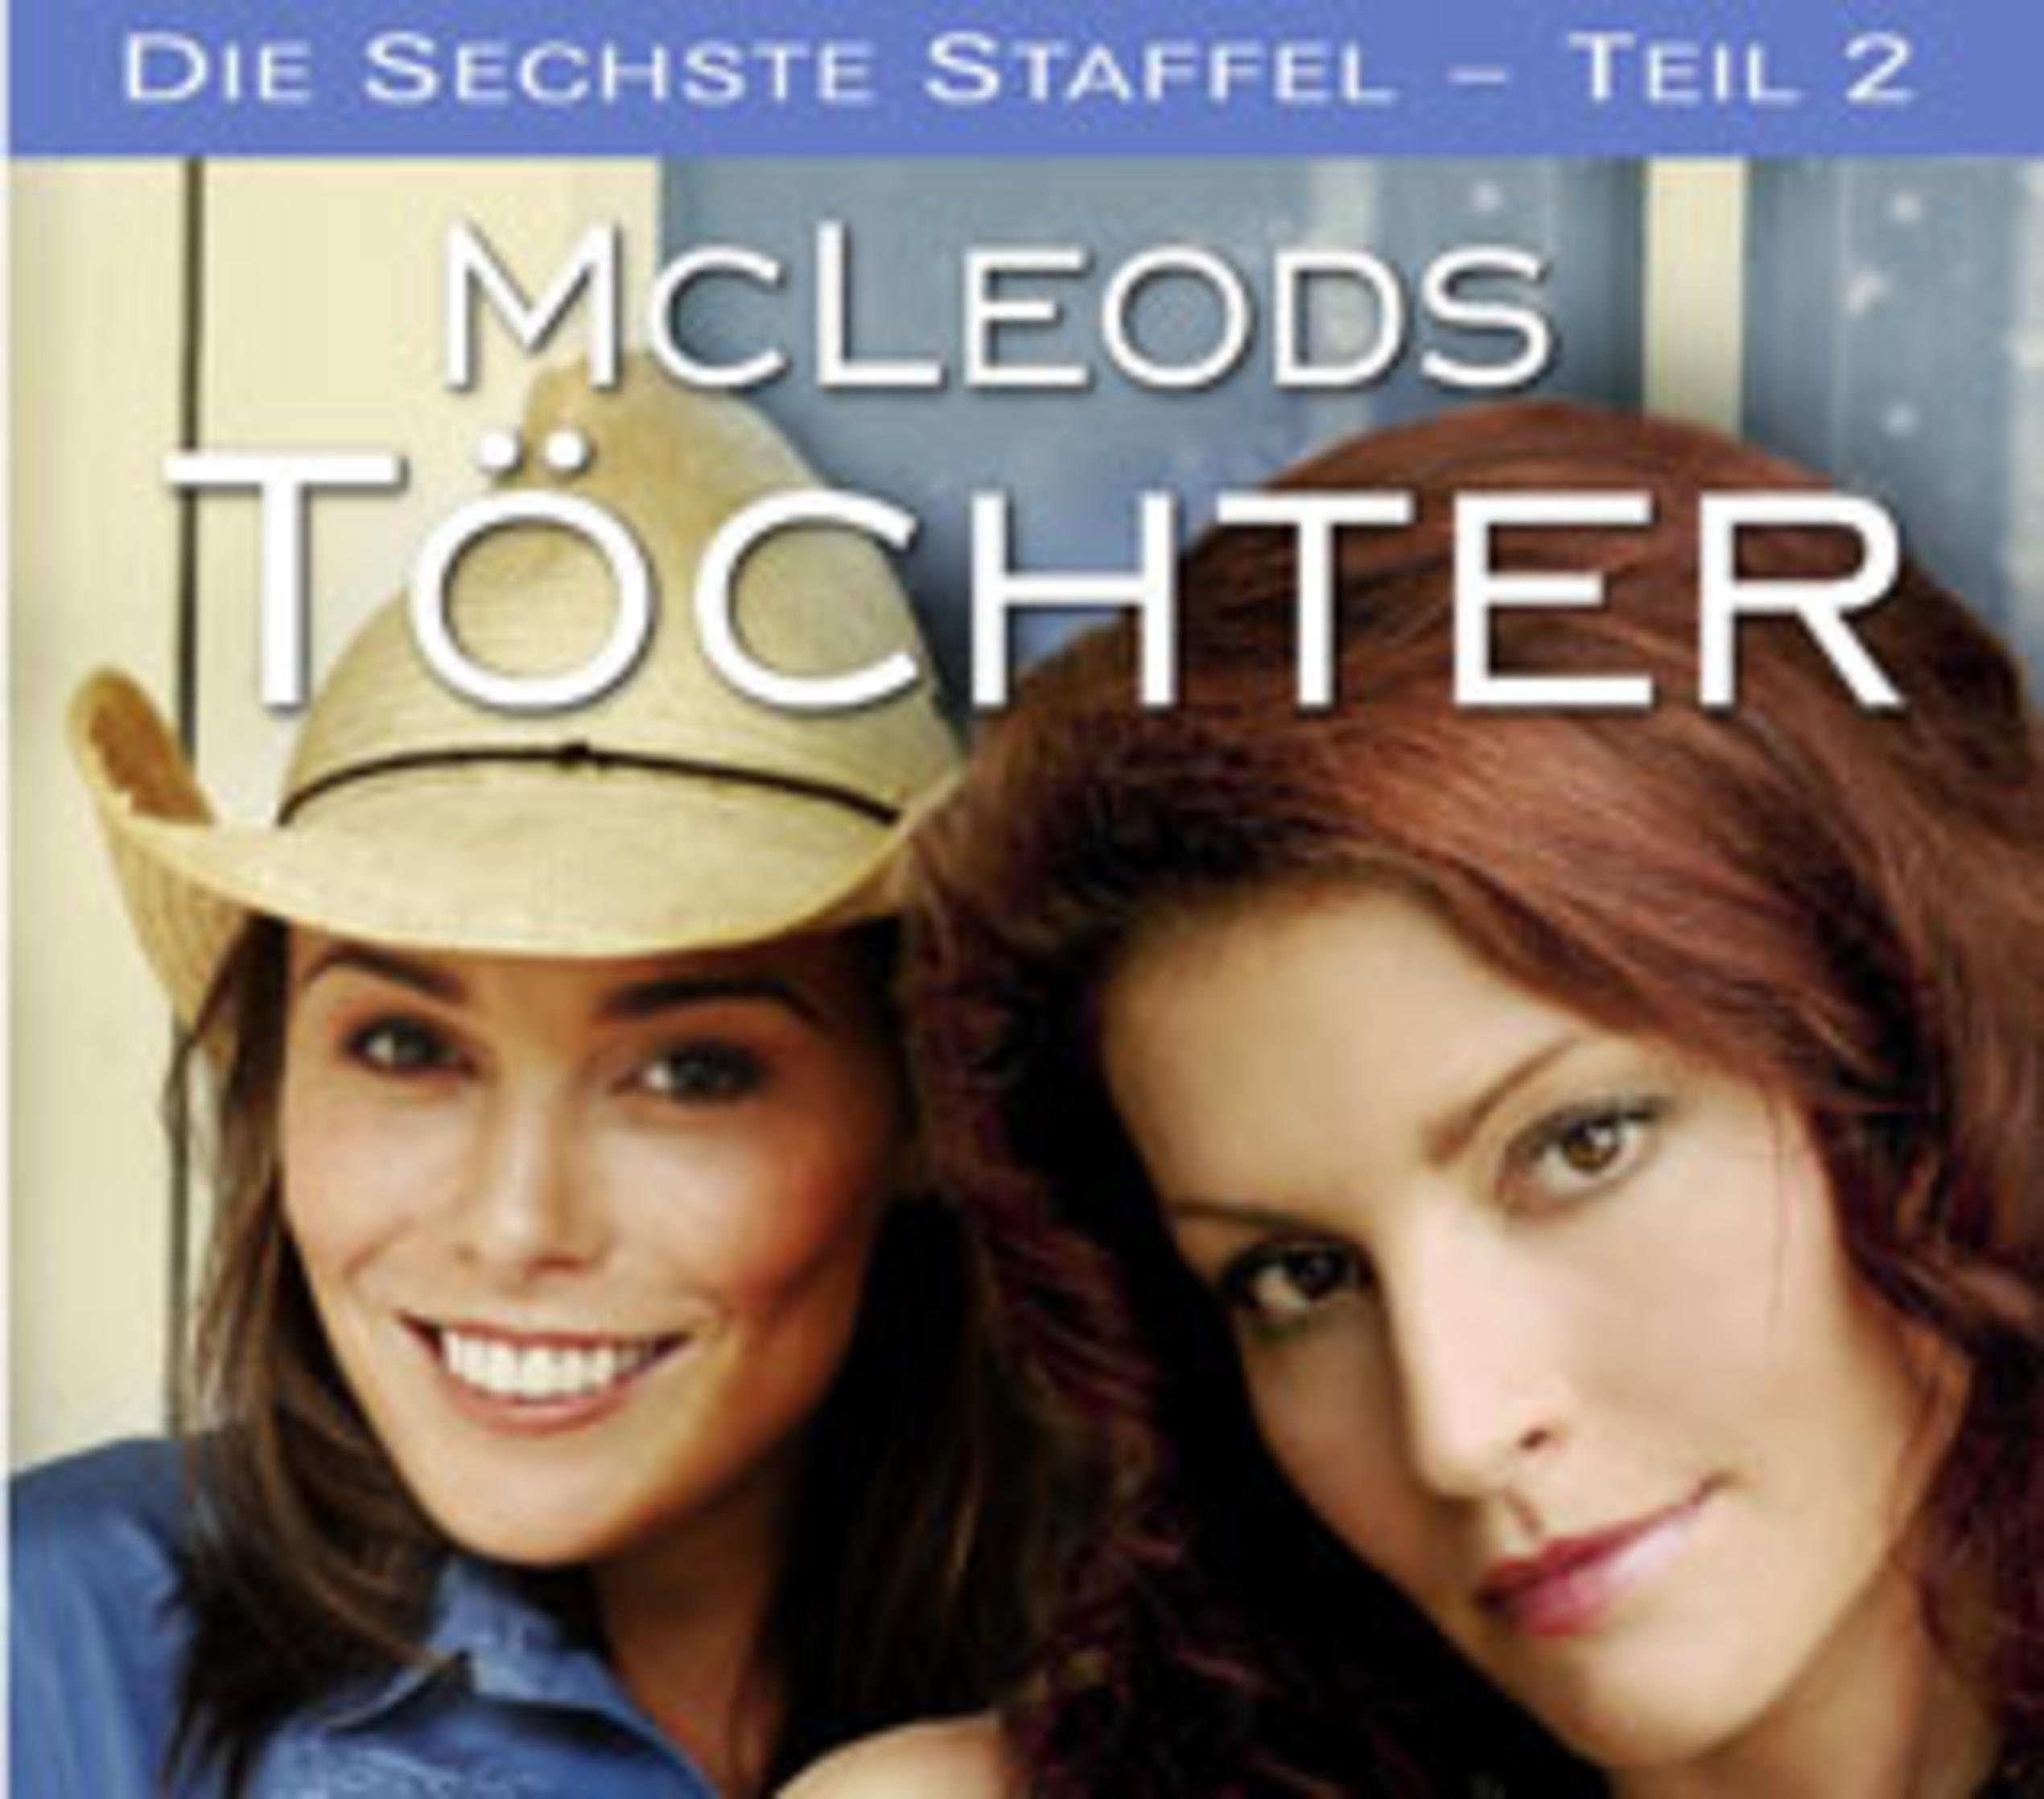 McLeods Töchter - Die sechste Staffel